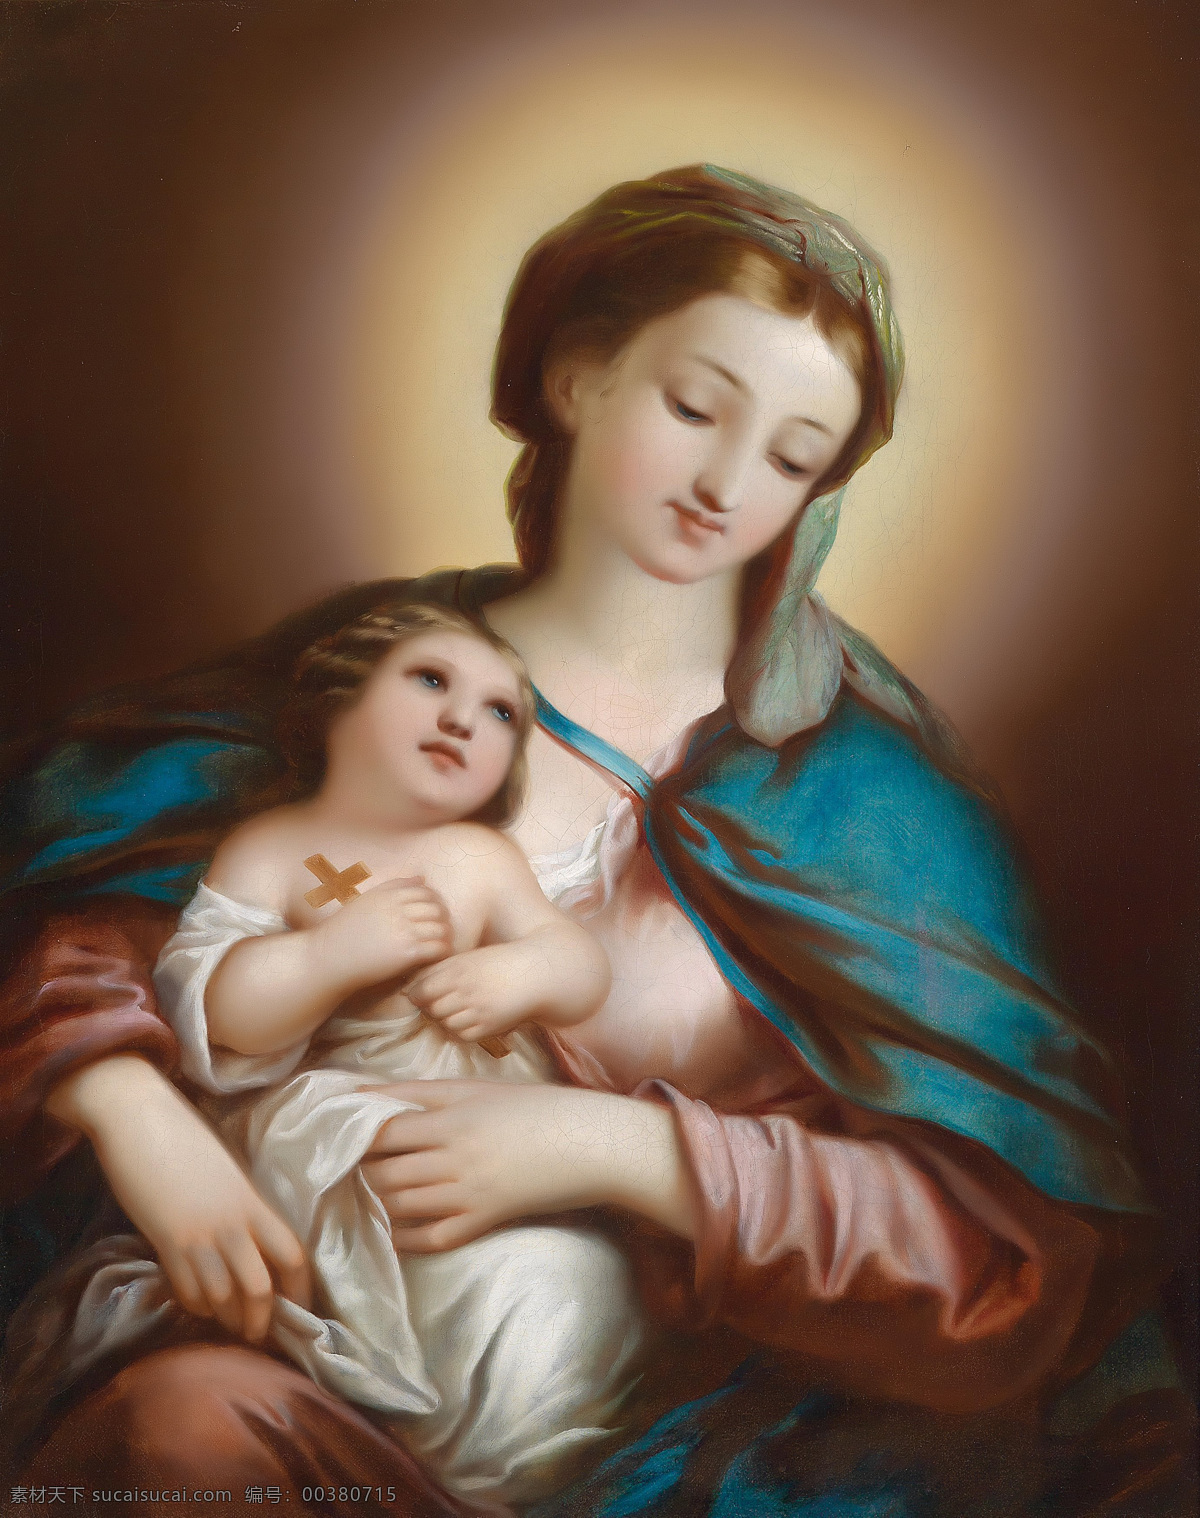 圣母抱耶稣 圣母抱子 玛利亚 耶稣 天主 人物图库 生活人物